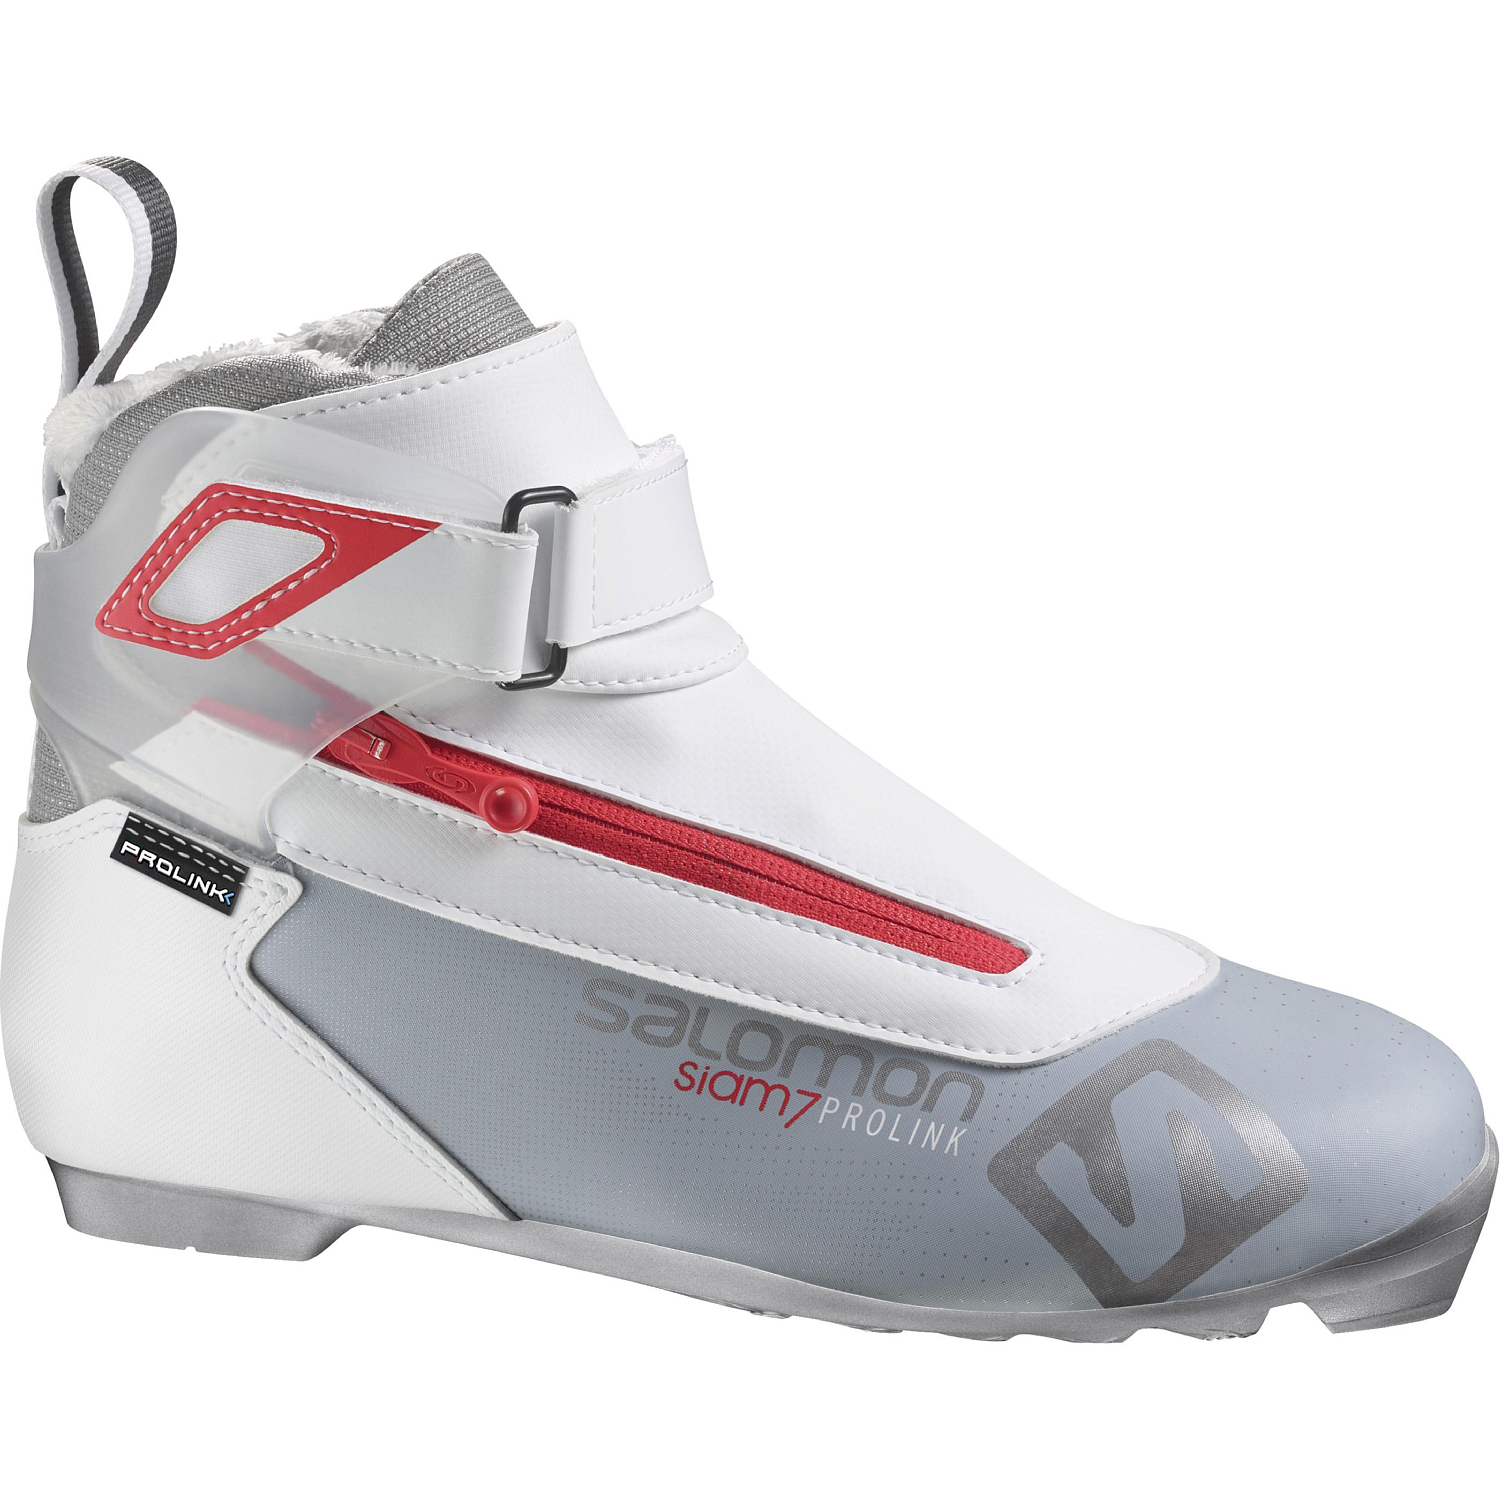 Лыжные ботинки SALOMON 2018-19 XC shoes siam 7 Prolink